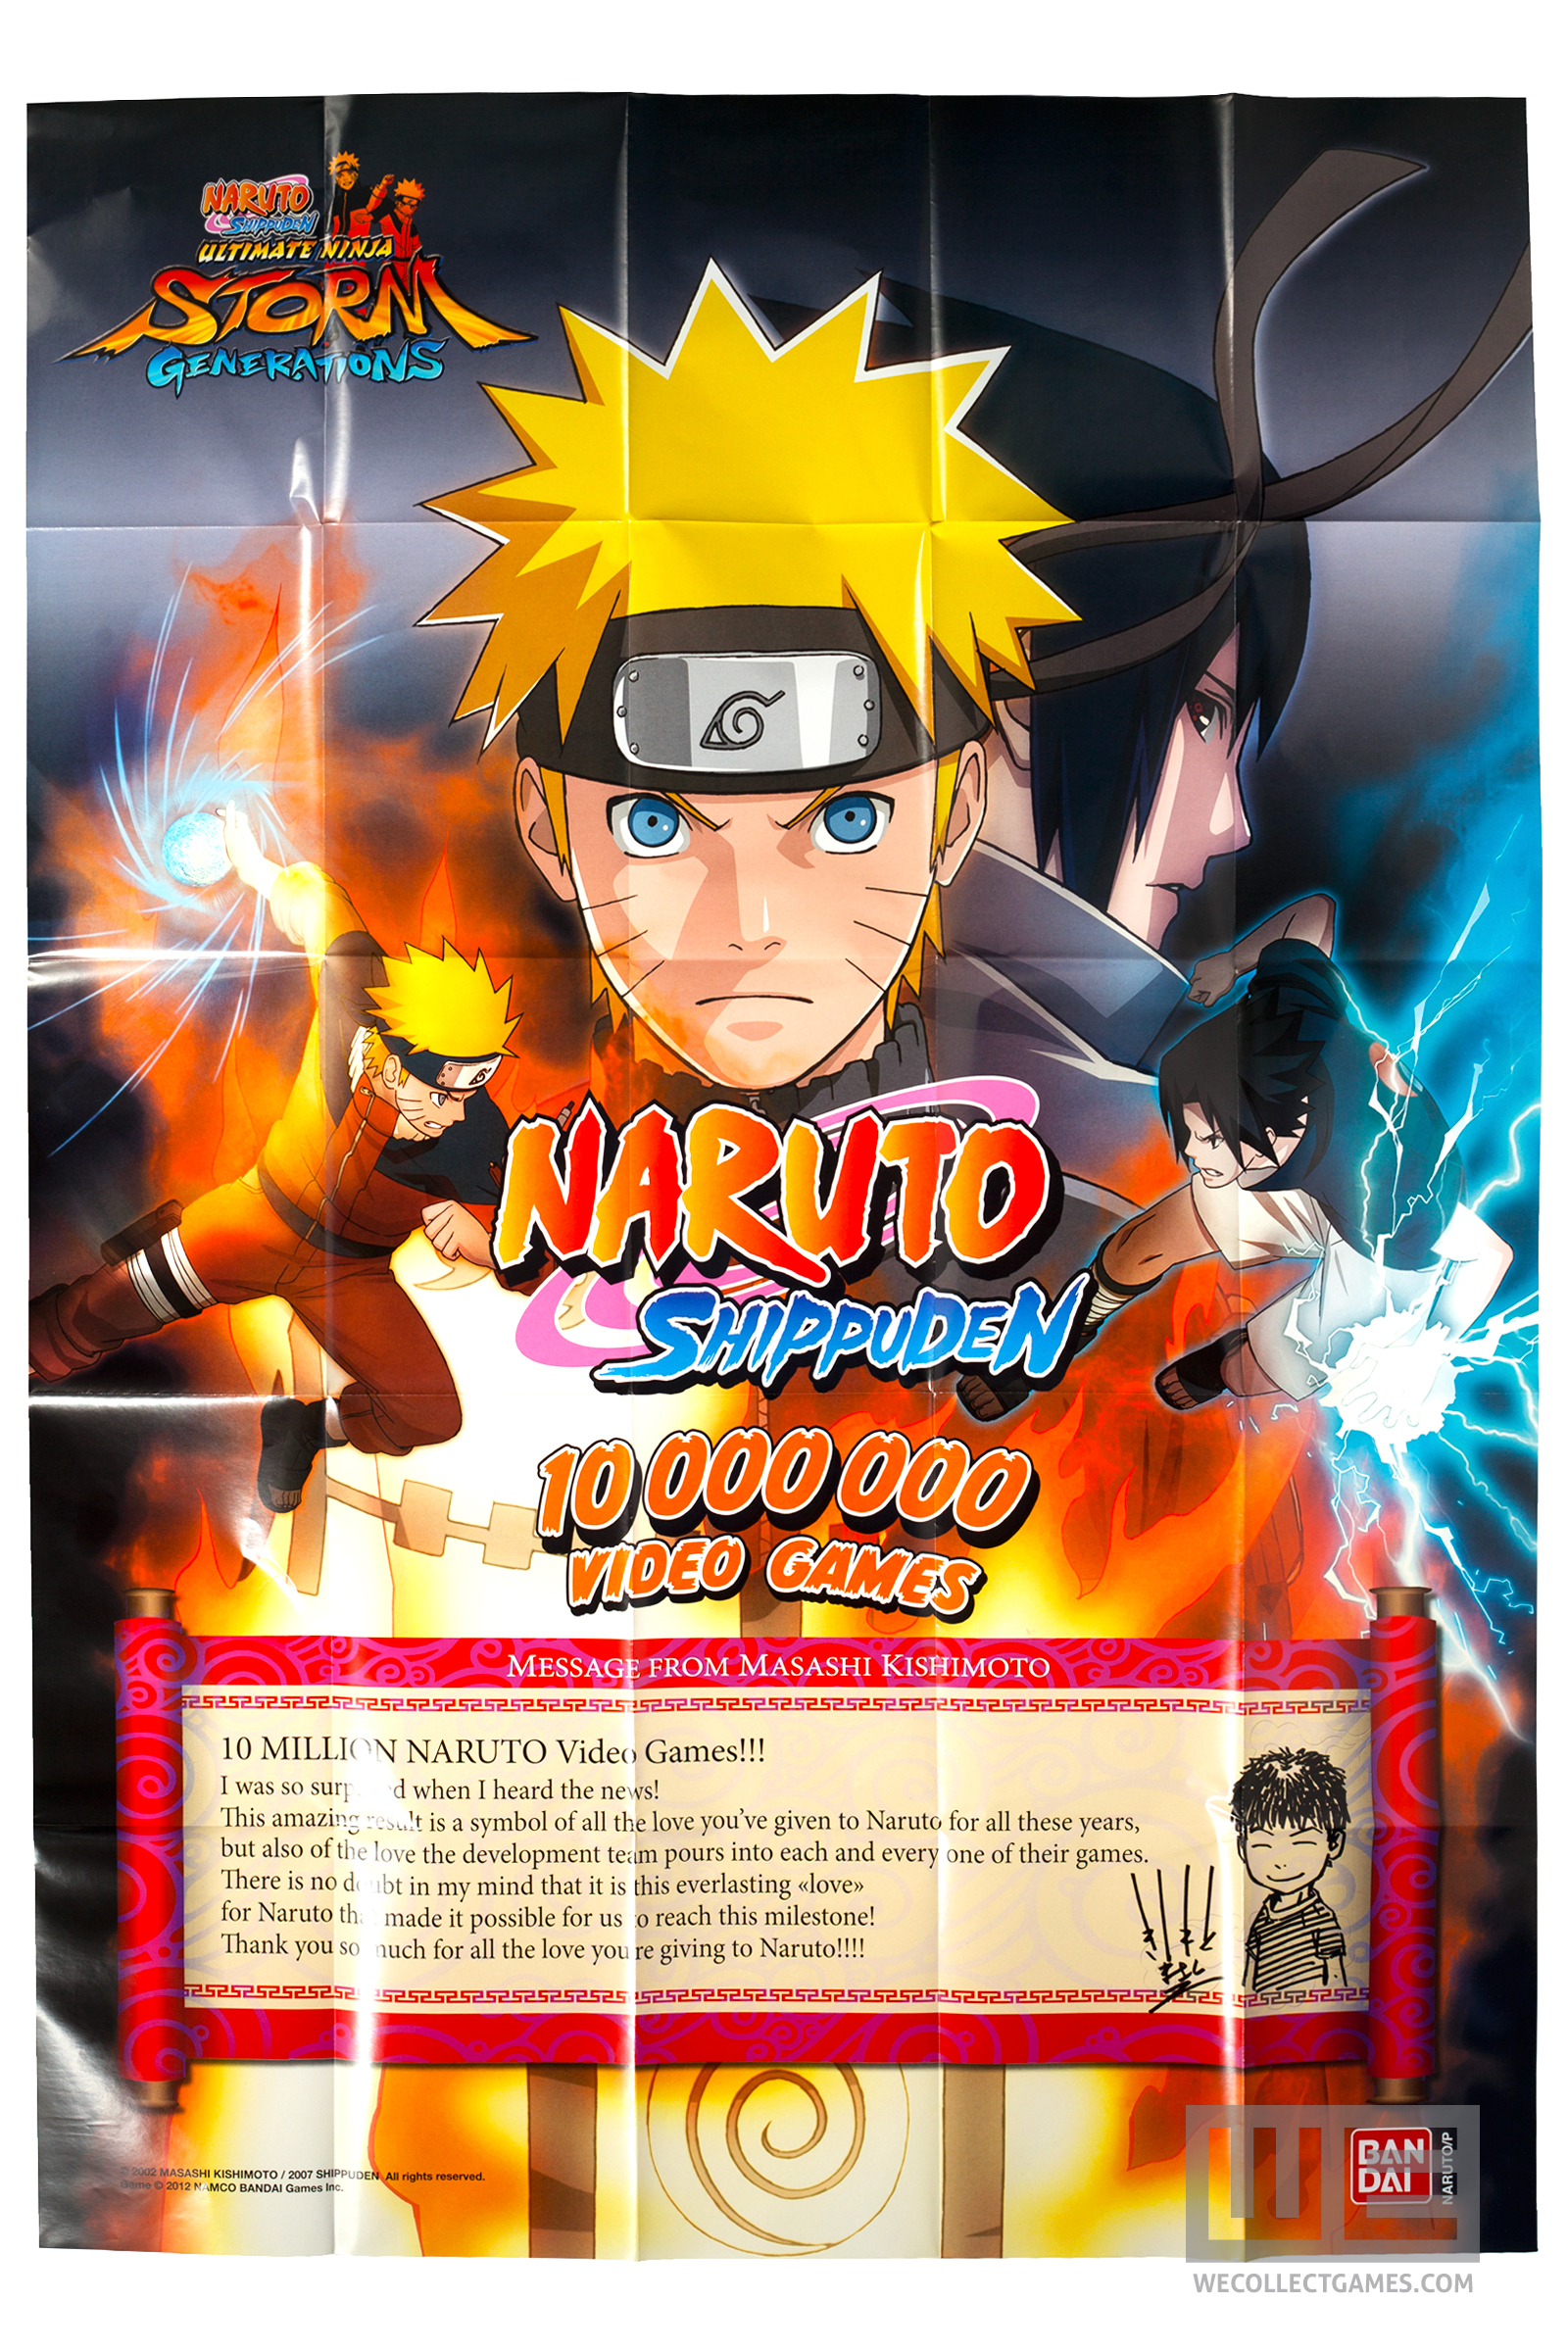 Naruto Namco Bandai Games Ultimate Ninja Storm Generations